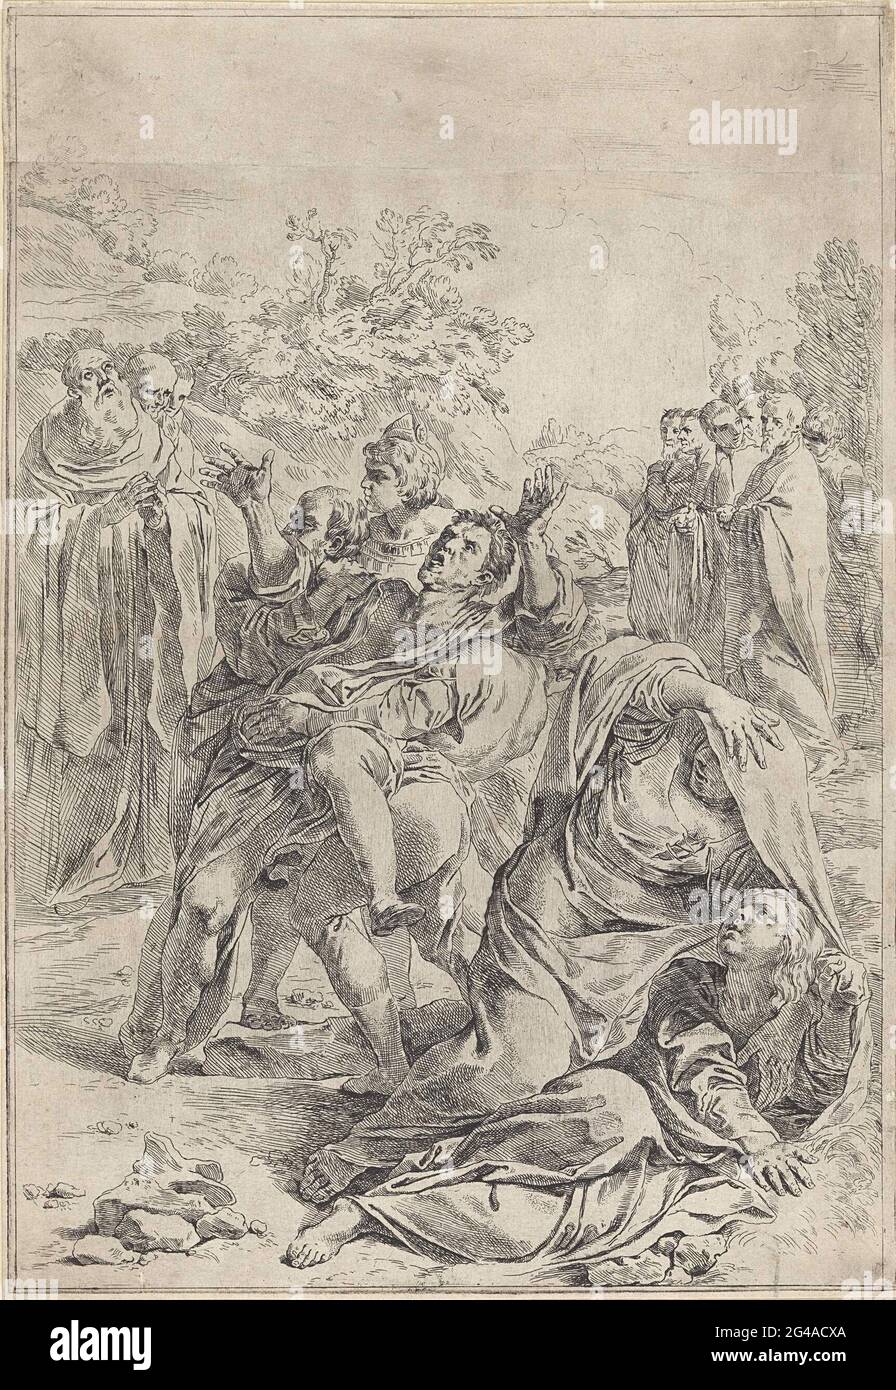 Der heilige Benedikt treibt einen Dämon an. Ein wildes Flopping, besessen von Dämonen, wird der Mensch von zwei Männern gehalten. Im Hintergrund links der heilige Benedikt, der von zwei Männern unterstützt wird. Zwei Frauen tauchen im Vordergrund ab. Stockfoto